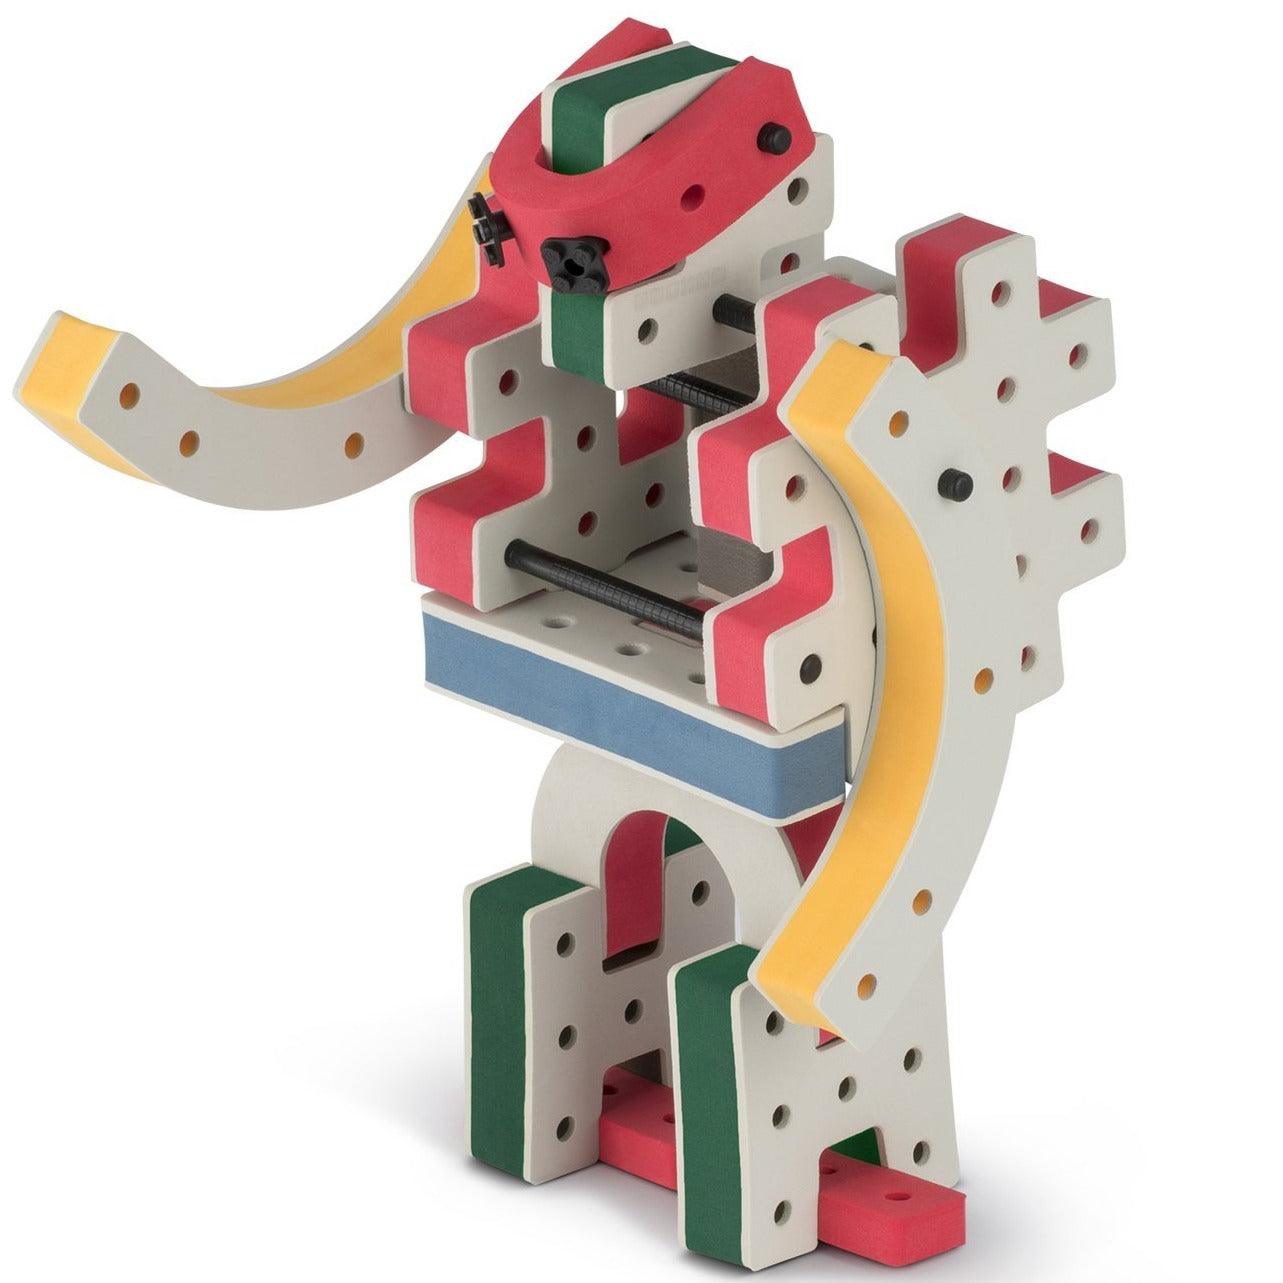 Bakoba: zestaw konstrukcyjny Inventor Box - Noski Noski